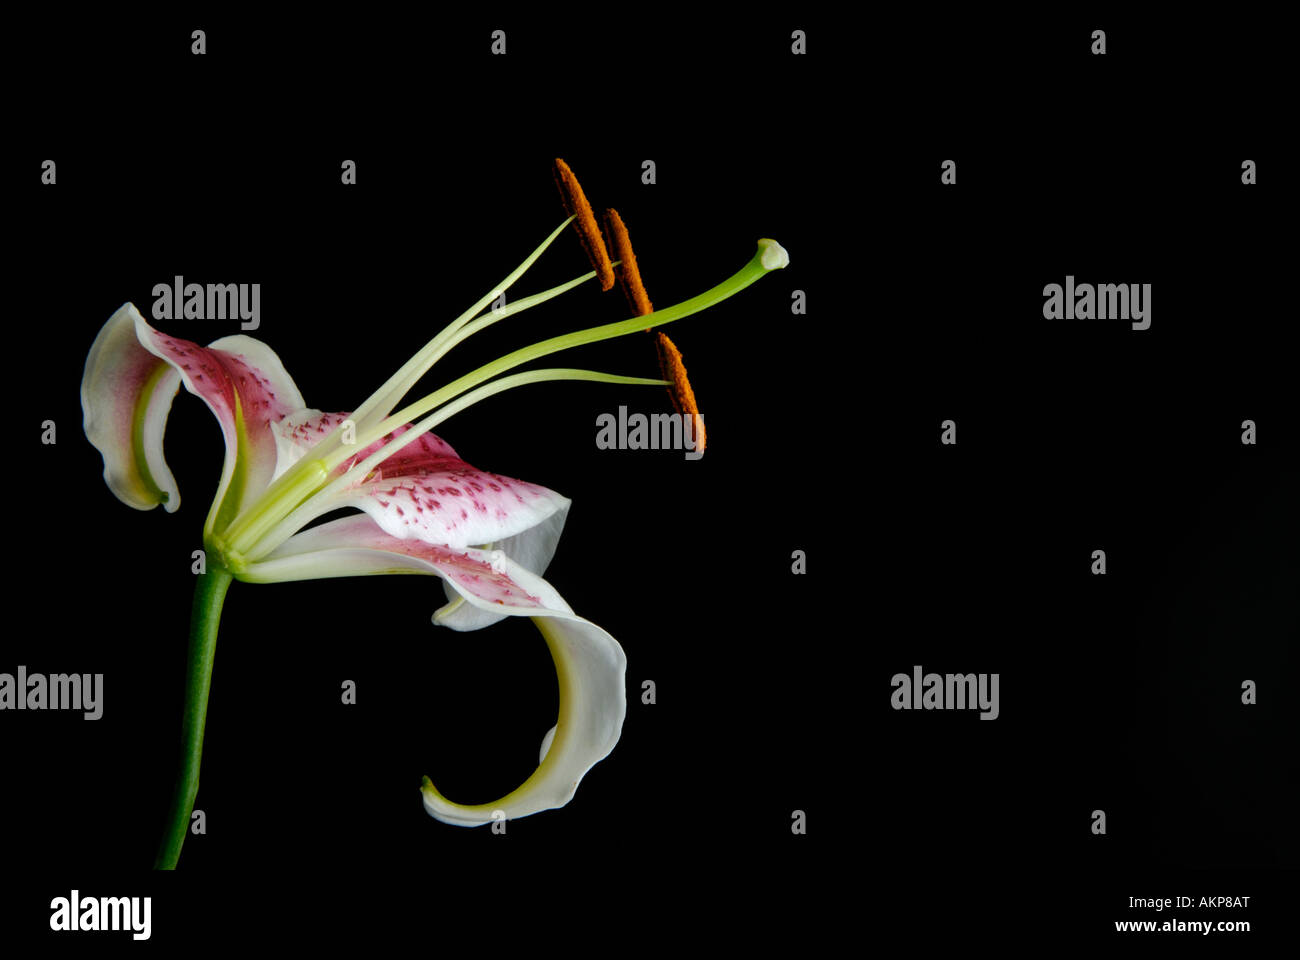 Sección transversal de flor mostrando ovario carpelo, estambres y otras estructuras reproductivas piezas Foto de stock